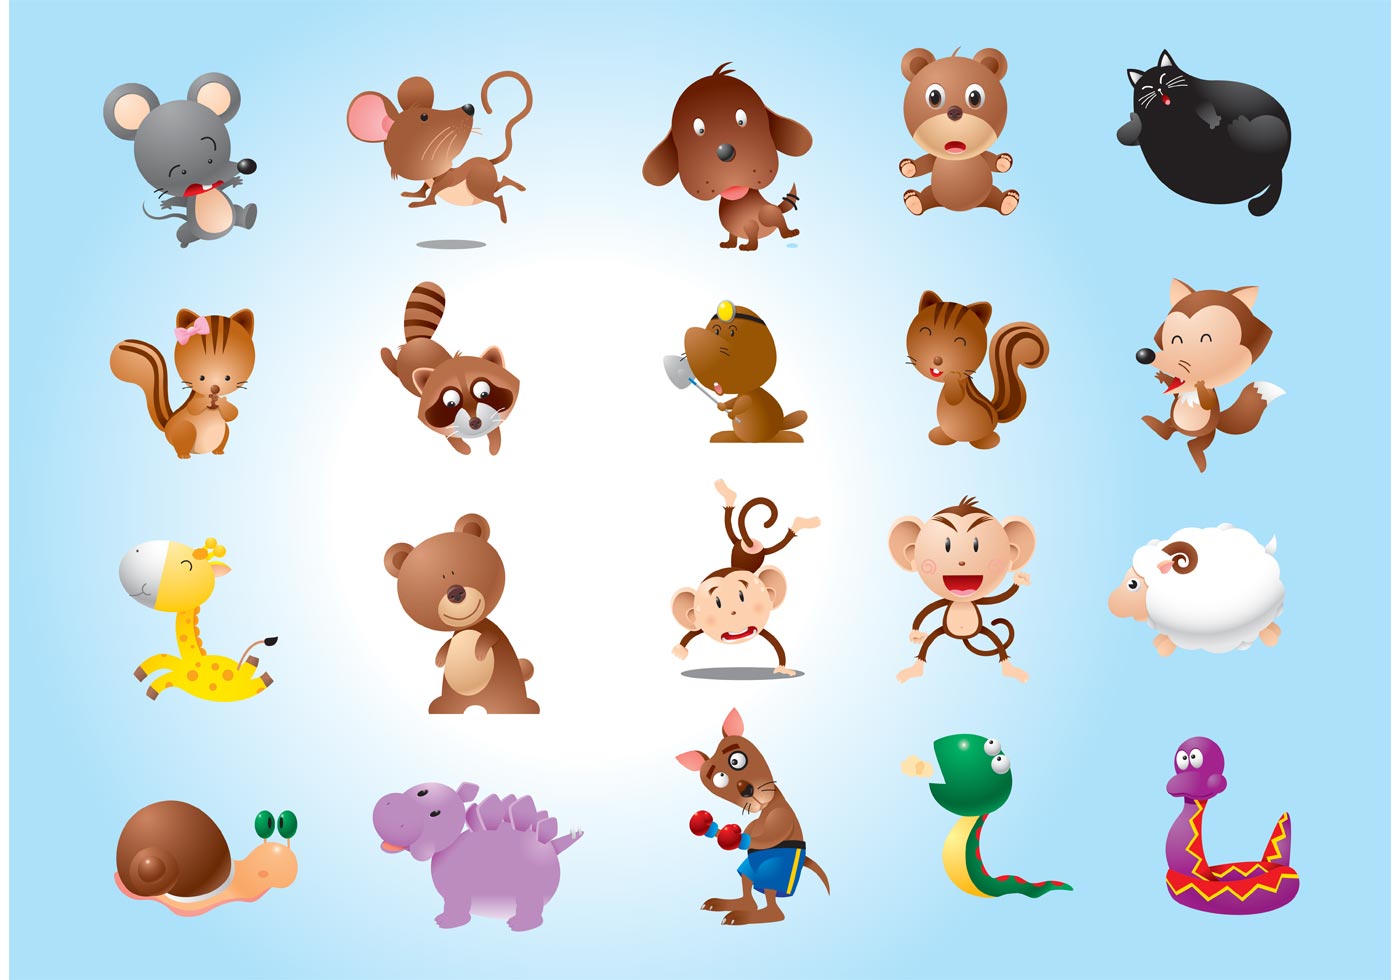 Animal Characters Vectors - Download Free Vector Art ...